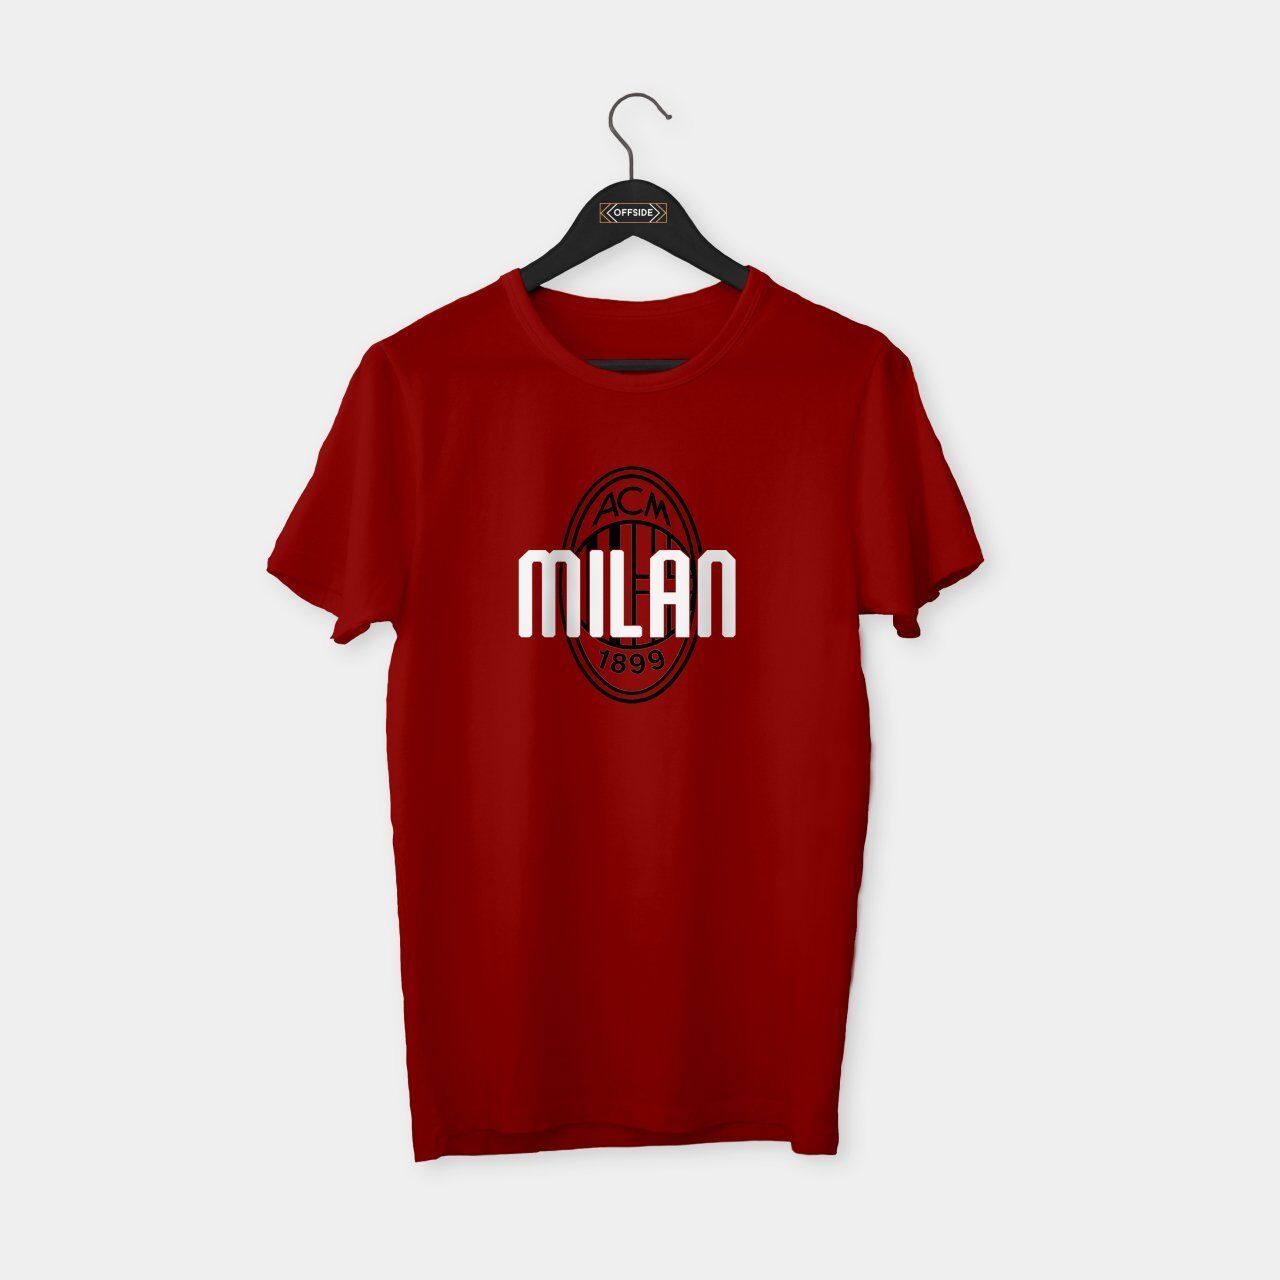 ACM Milan 1899 T-shirt